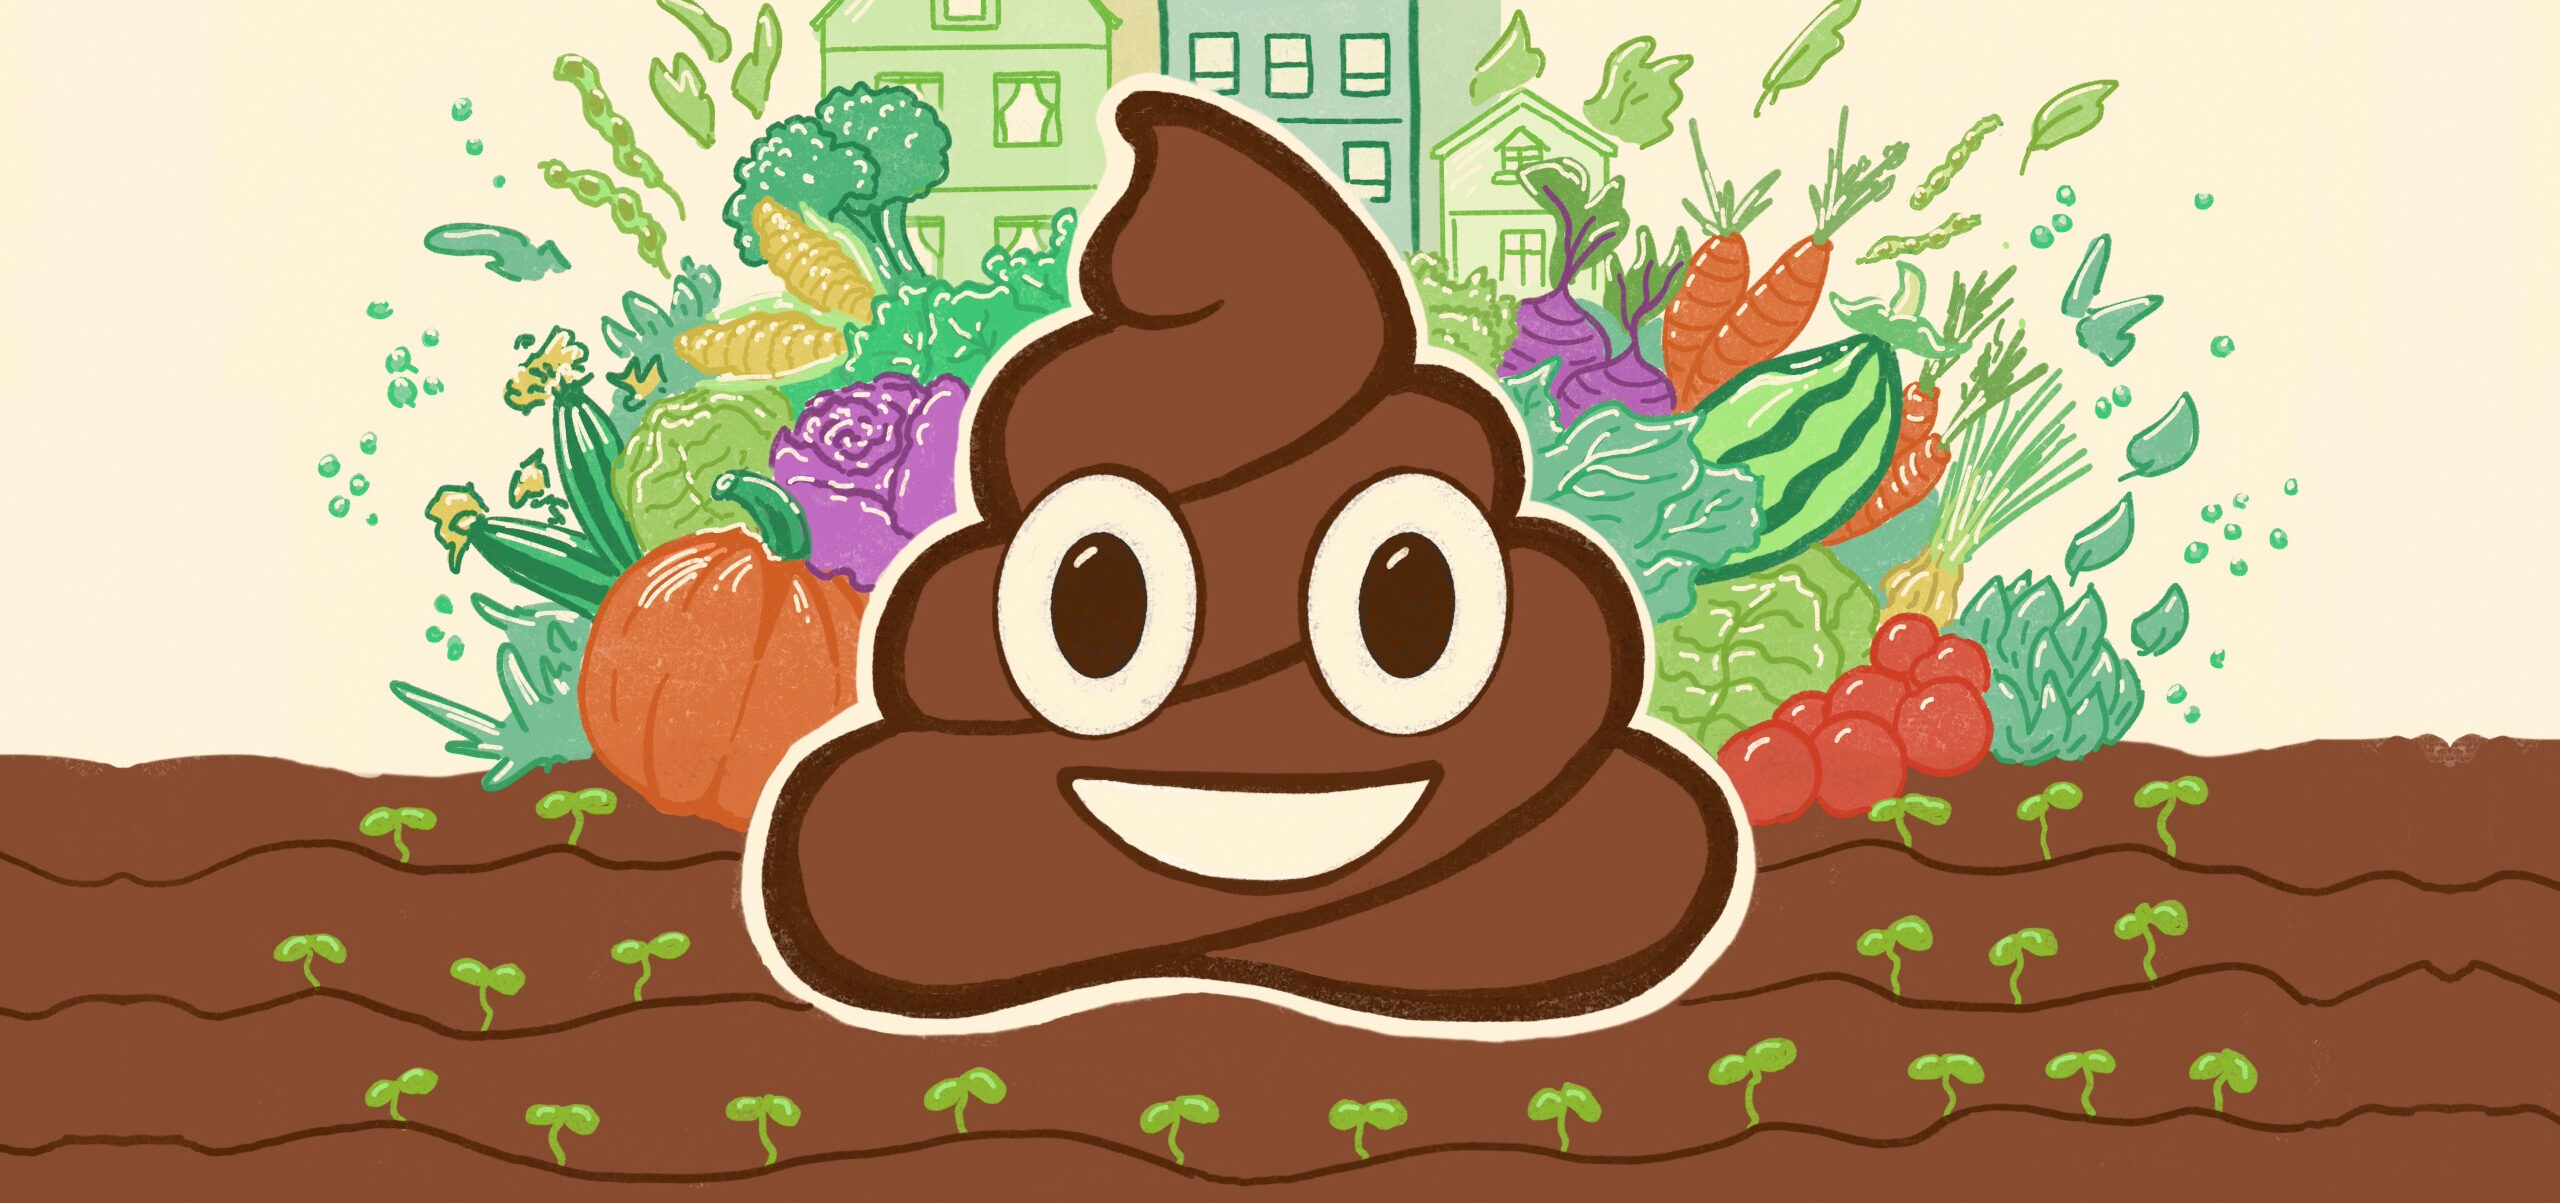 Illustration of a poop emoji in a garden